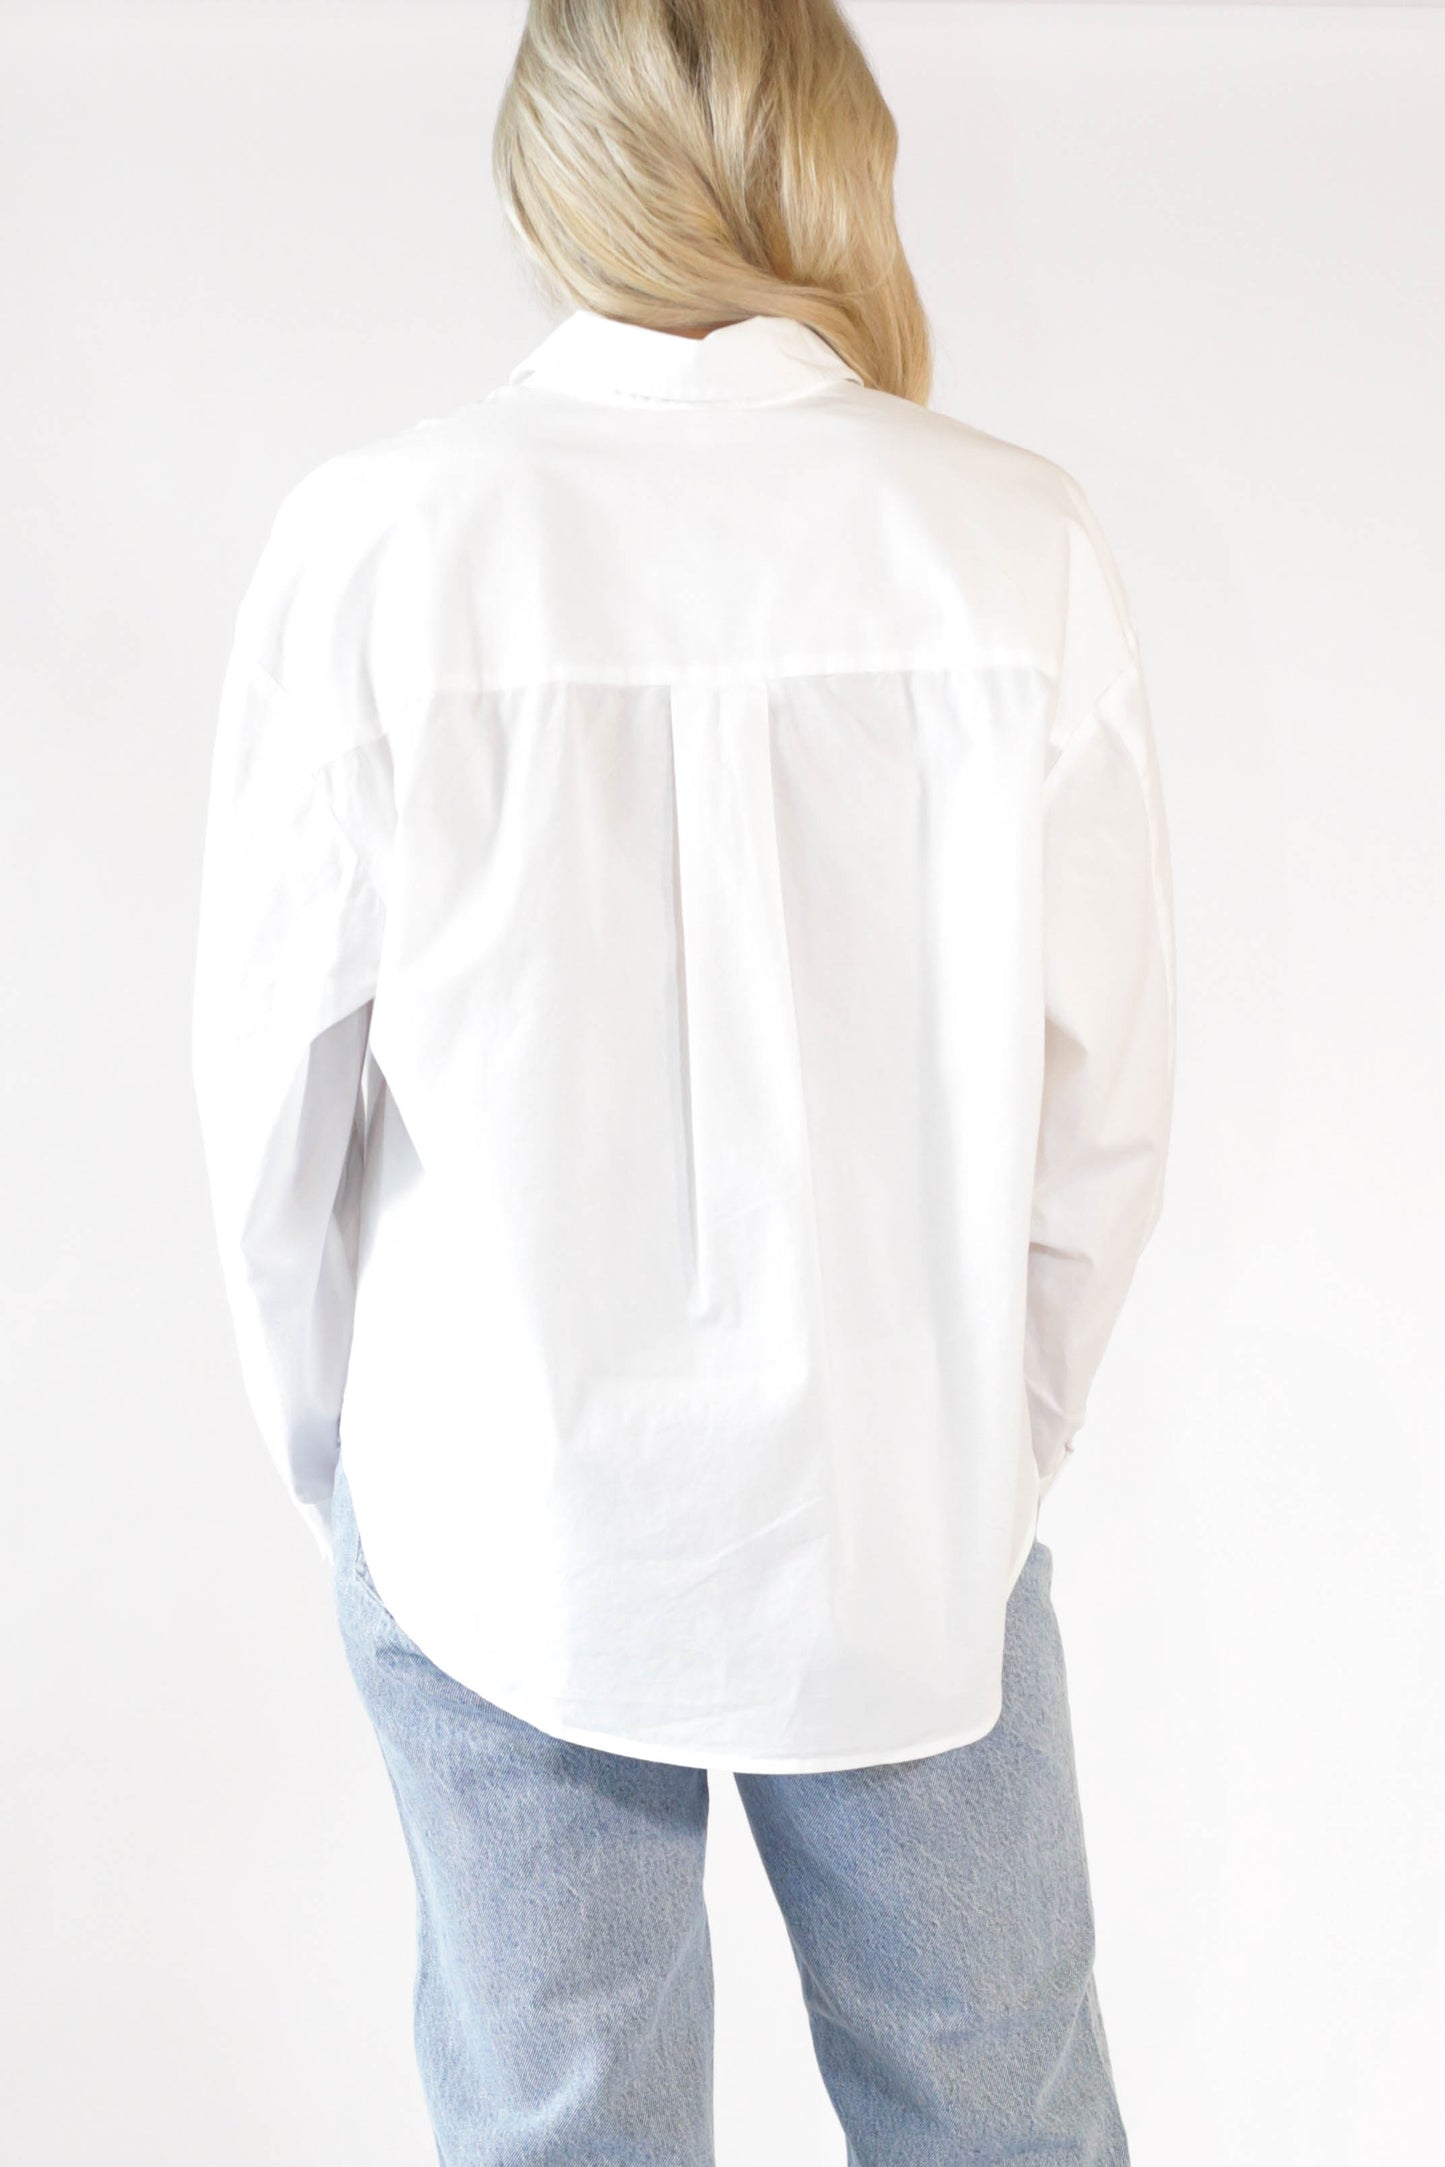 Sloane Shirt Le Blanc